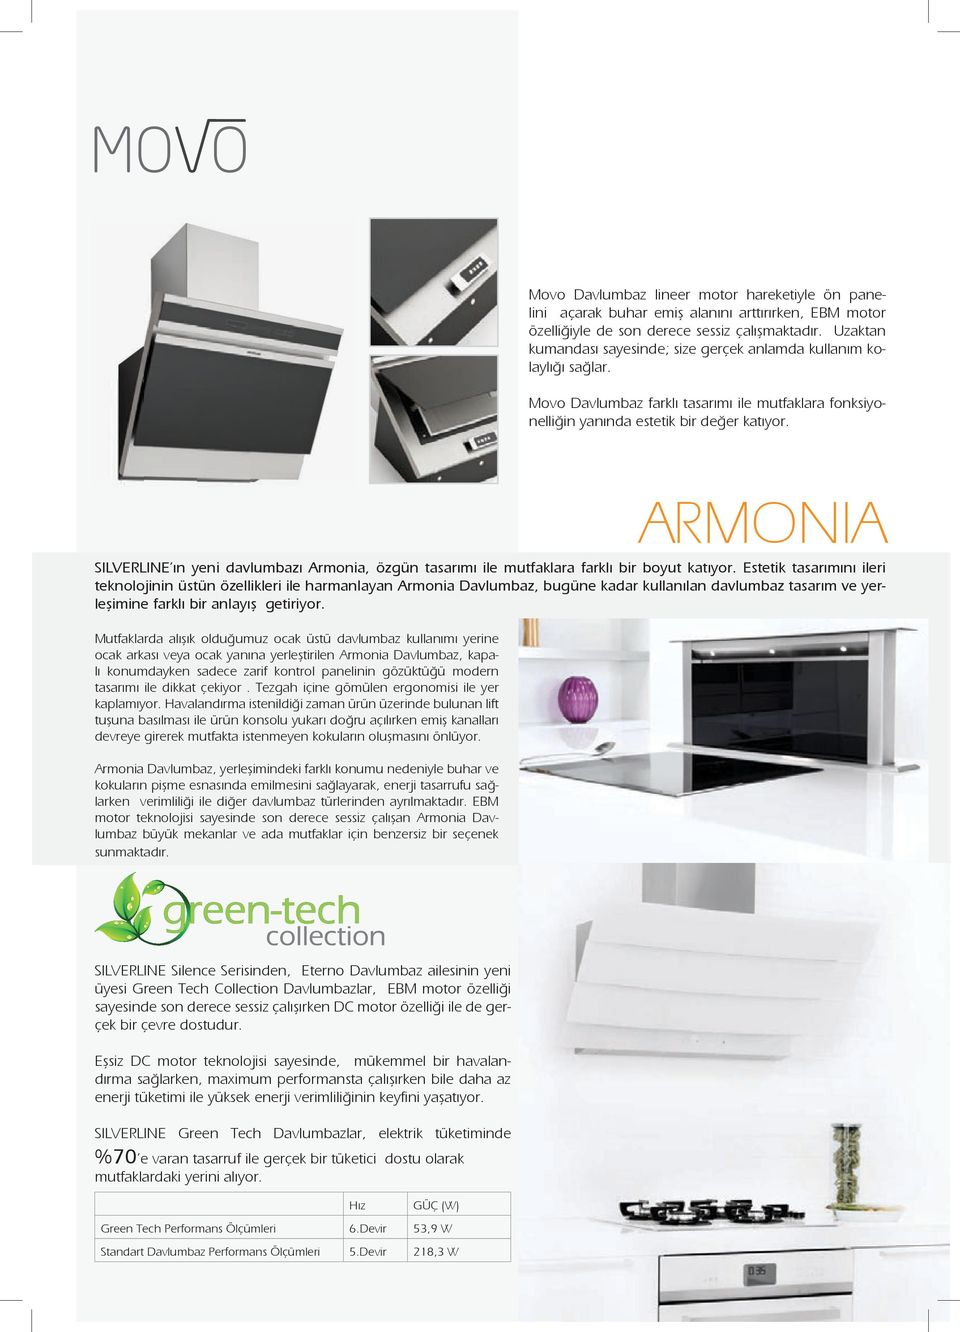 ARMONIA SILVERLINE ın yeni davlumbazı Armonia, özgün tasarımı ile mutfaklara farklı bir boyut katıyor.